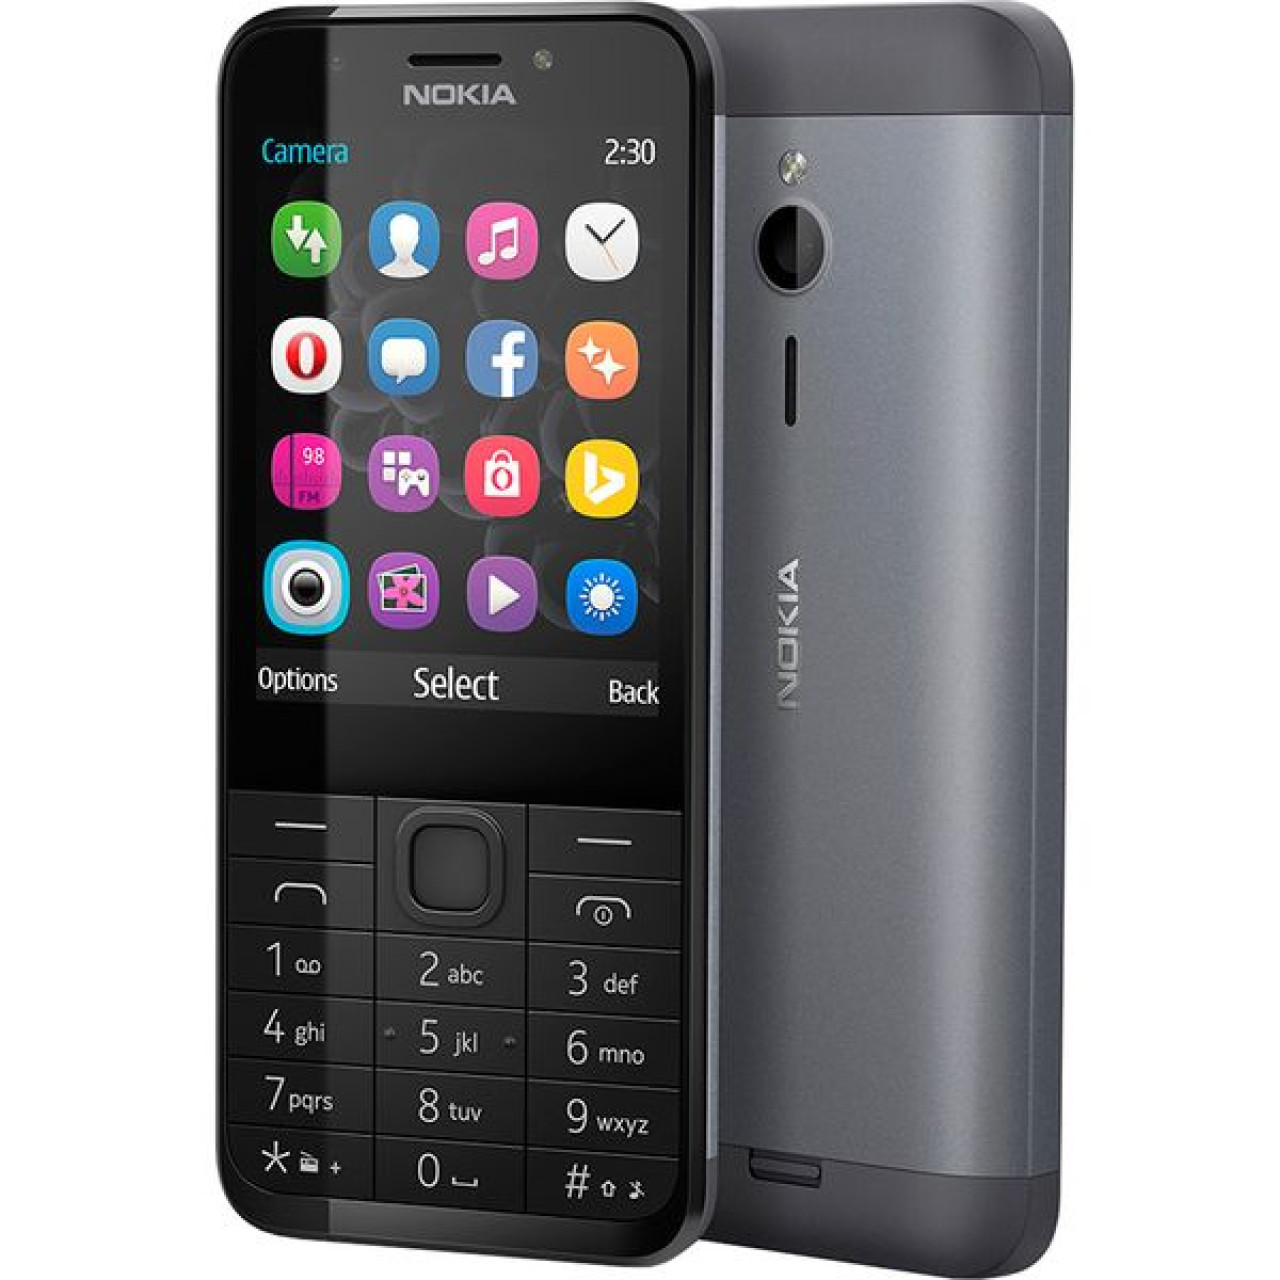 Мобильные телефоны великий новгород. Nokia 230 Dual SIM. Nokia 230 (RM-1172). Nokia 230 Dual SIM, Black Silver. Nokia 230 DS Black Silver.